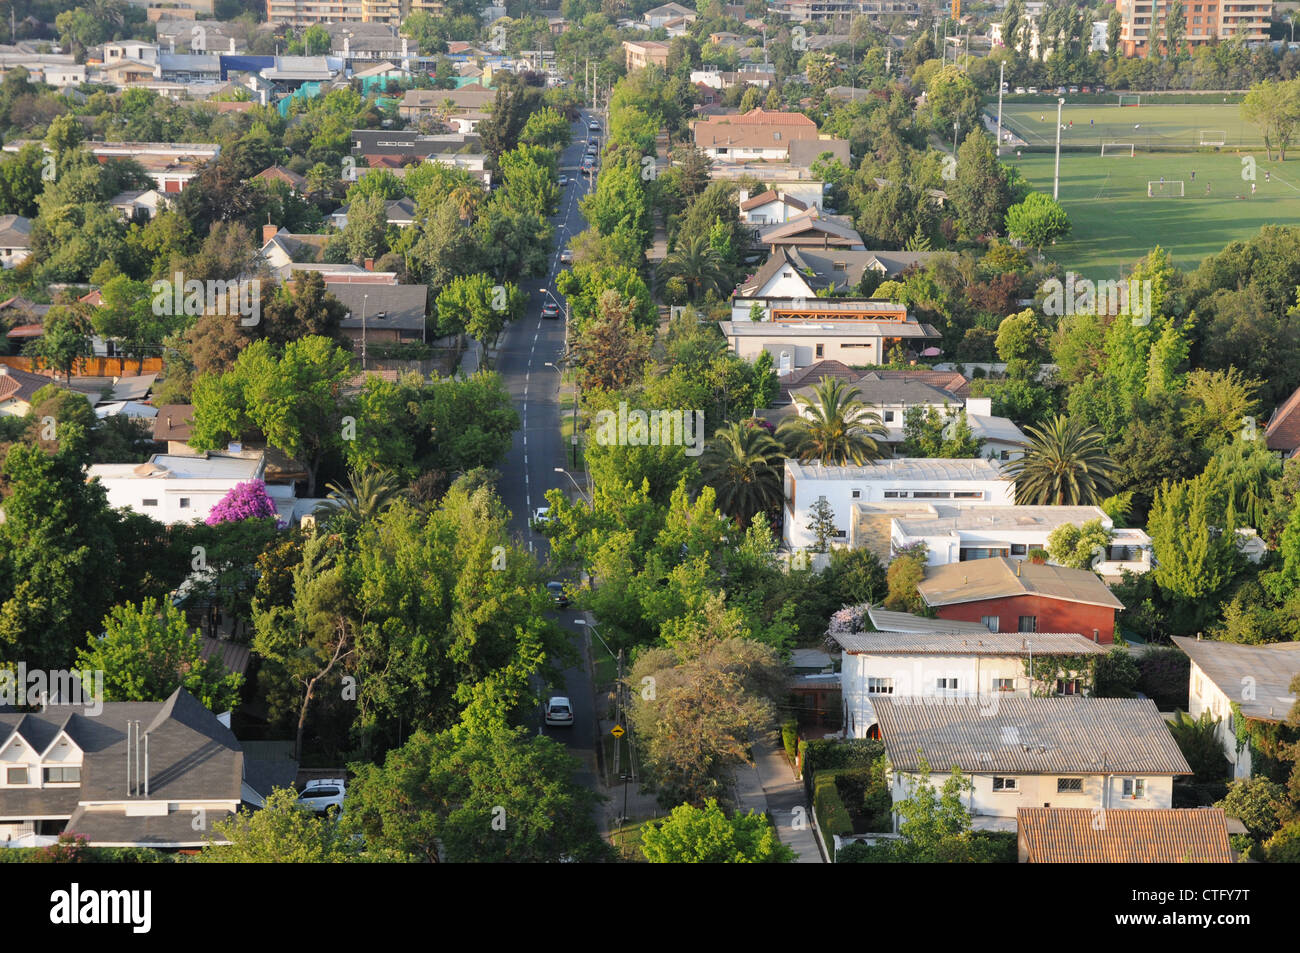 Verschiedene Häuser, Straßen, Bäume, Autos, Prince Of Wales Club Felder, Santiago, Chile. Stockfoto